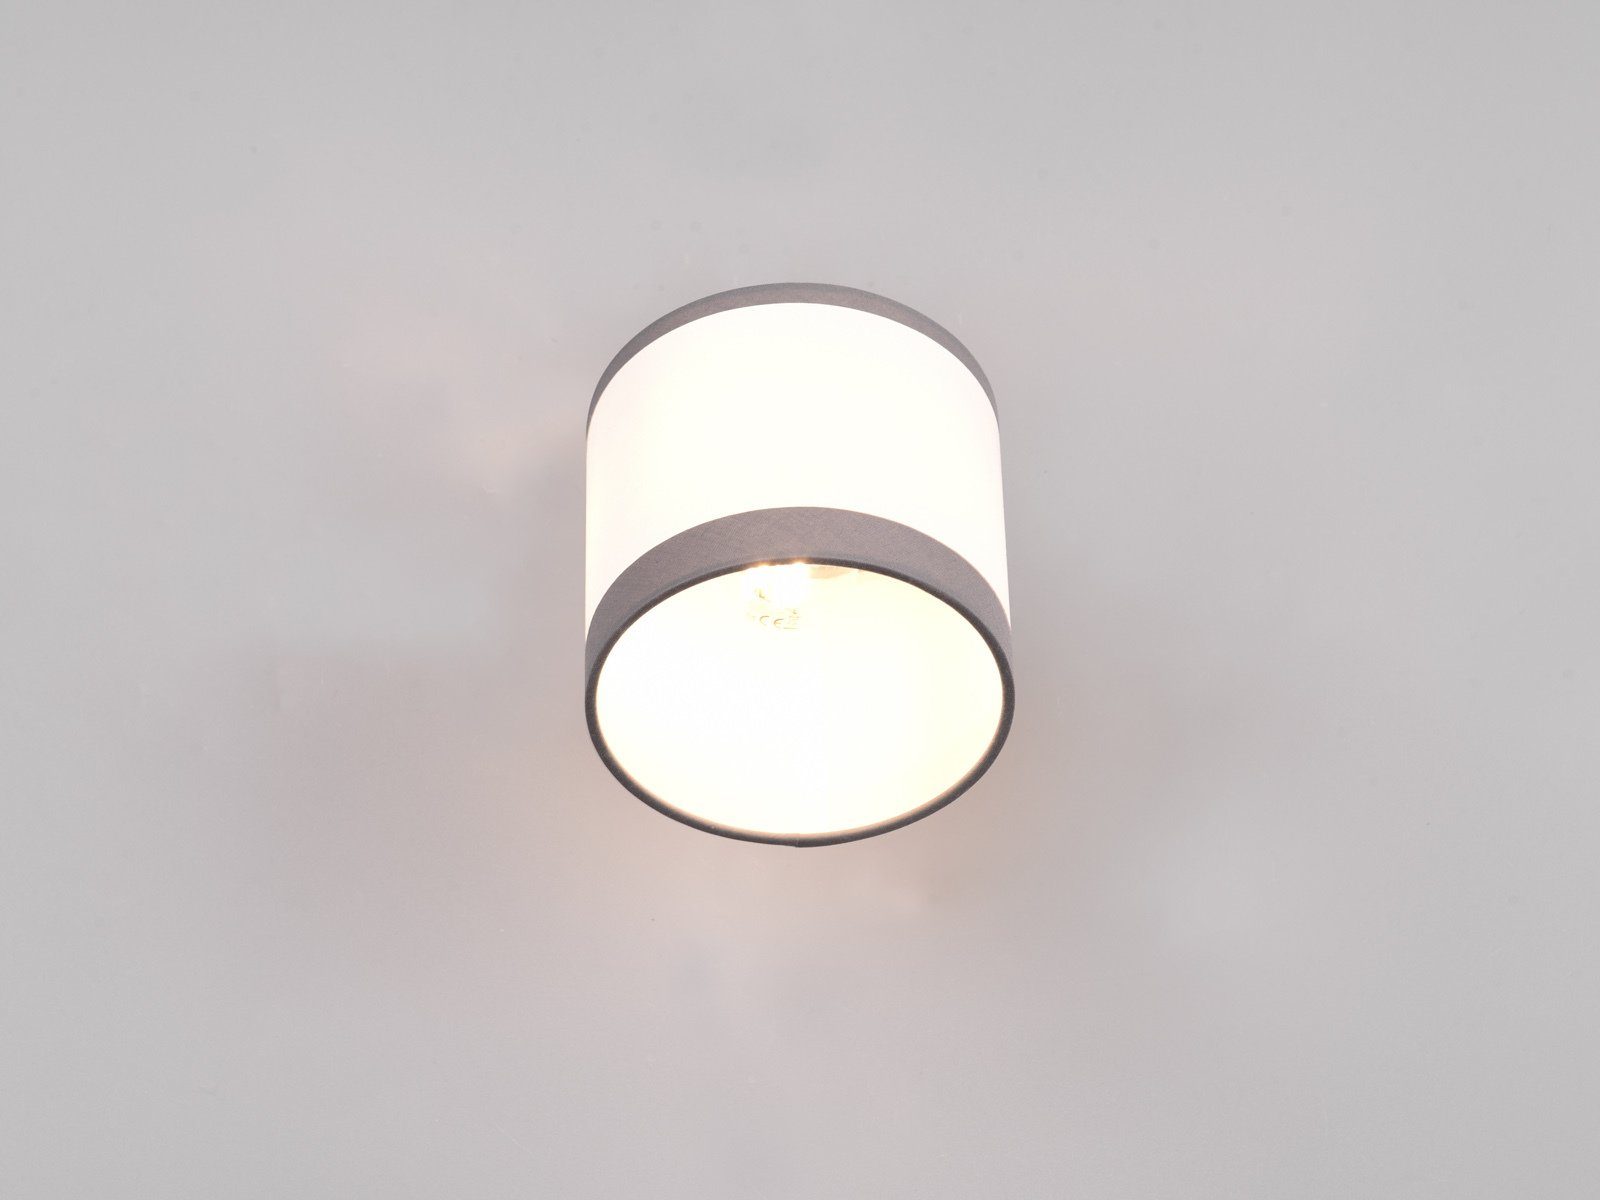 H LED warmweiß, Wandstrahler, meineWunschleuchte mit 21cm Leselampe LED innen, Weiß/Grau wechselbar, Wandlampe Schalter Wand, Nachttischlampe